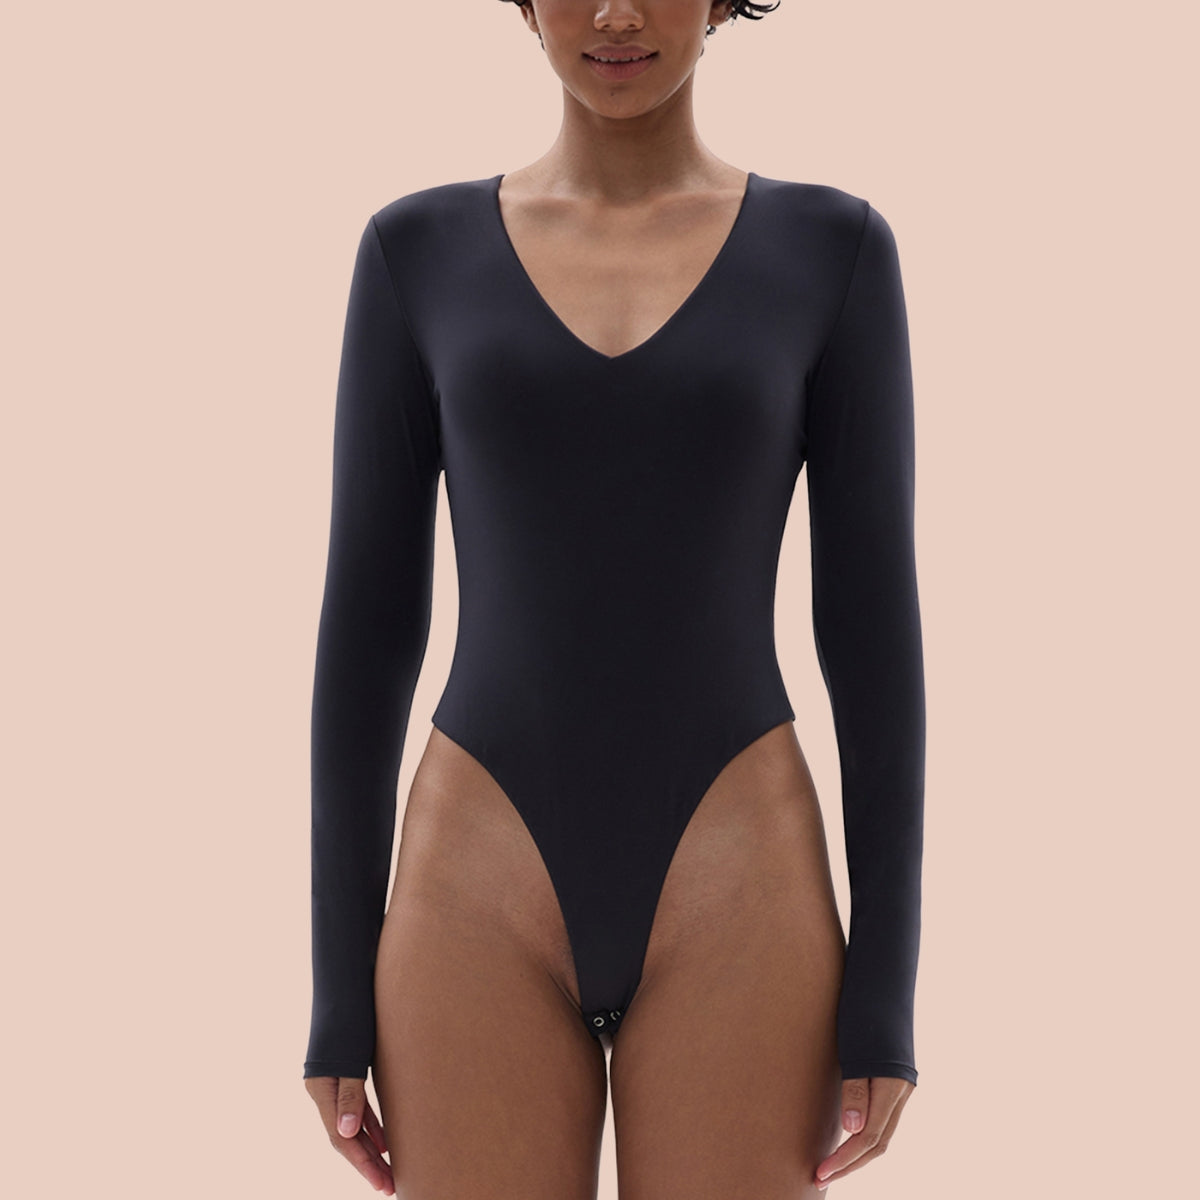 SHAPERX Bodysuit for Women V Neck Long Sleeve Body Suit